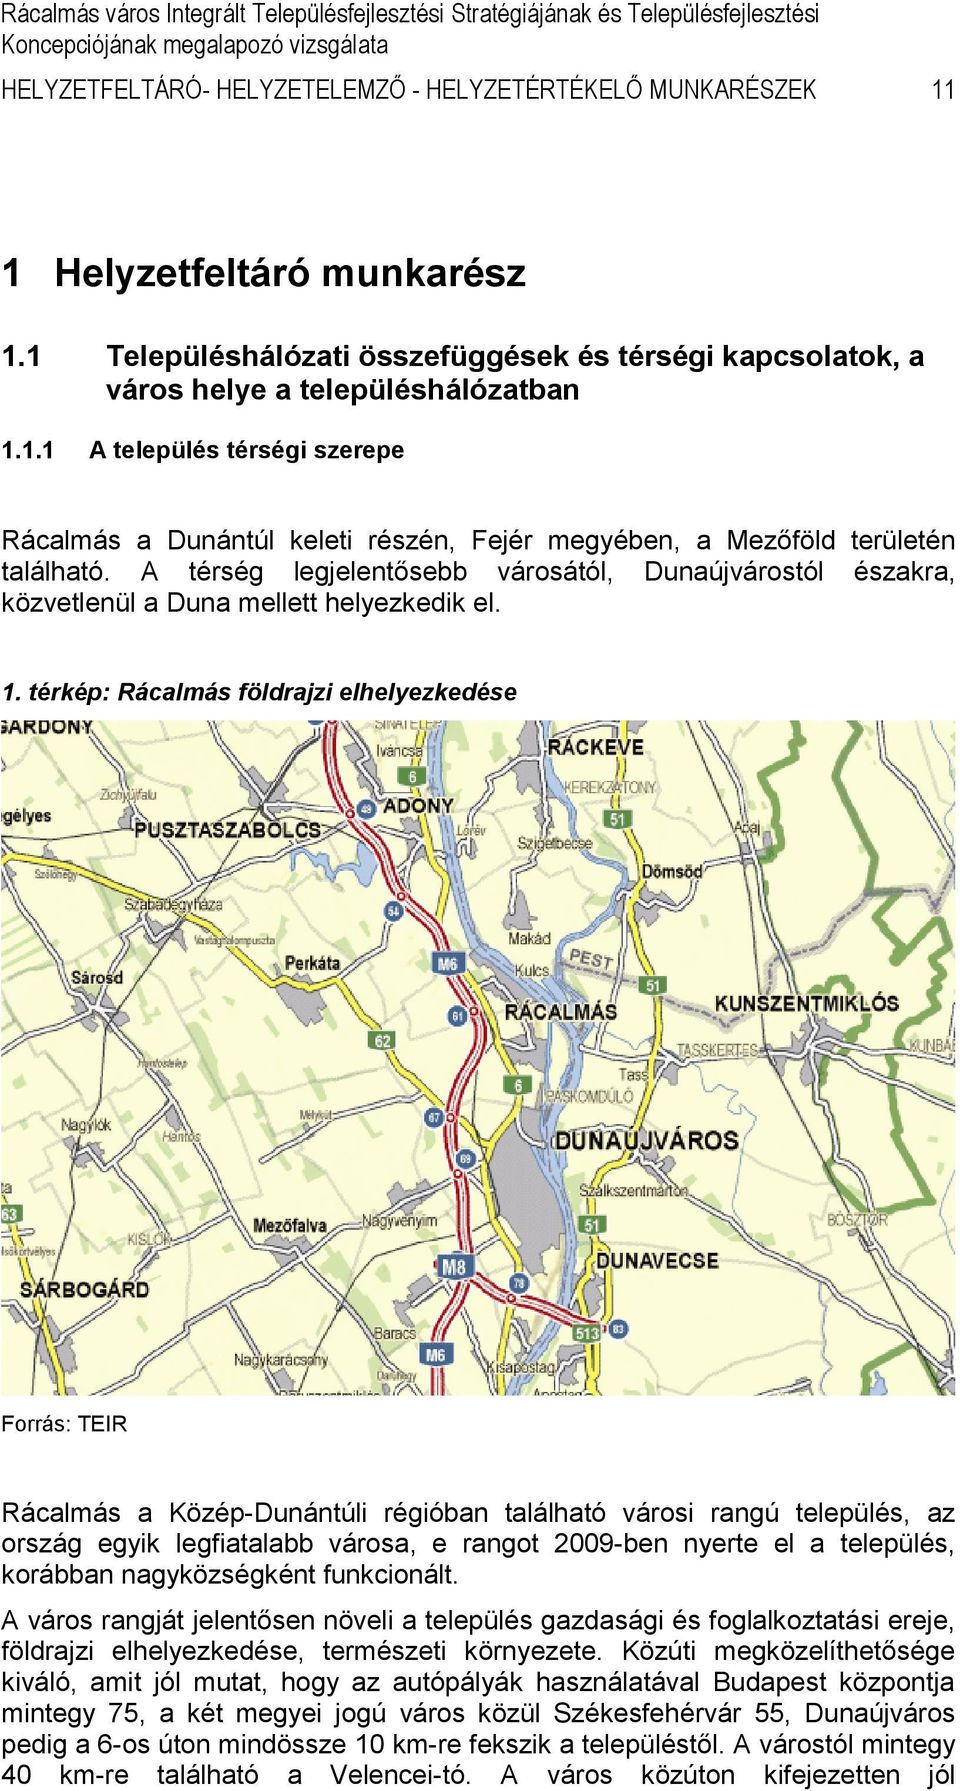 térkép: Rácalmás földrajzi elhelyezkedése Forrás: TEIR Rácalmás a Közép-Dunántúli régióban található városi rangú település, az ország egyik legfiatalabb városa, e rangot 2009-ben nyerte el a